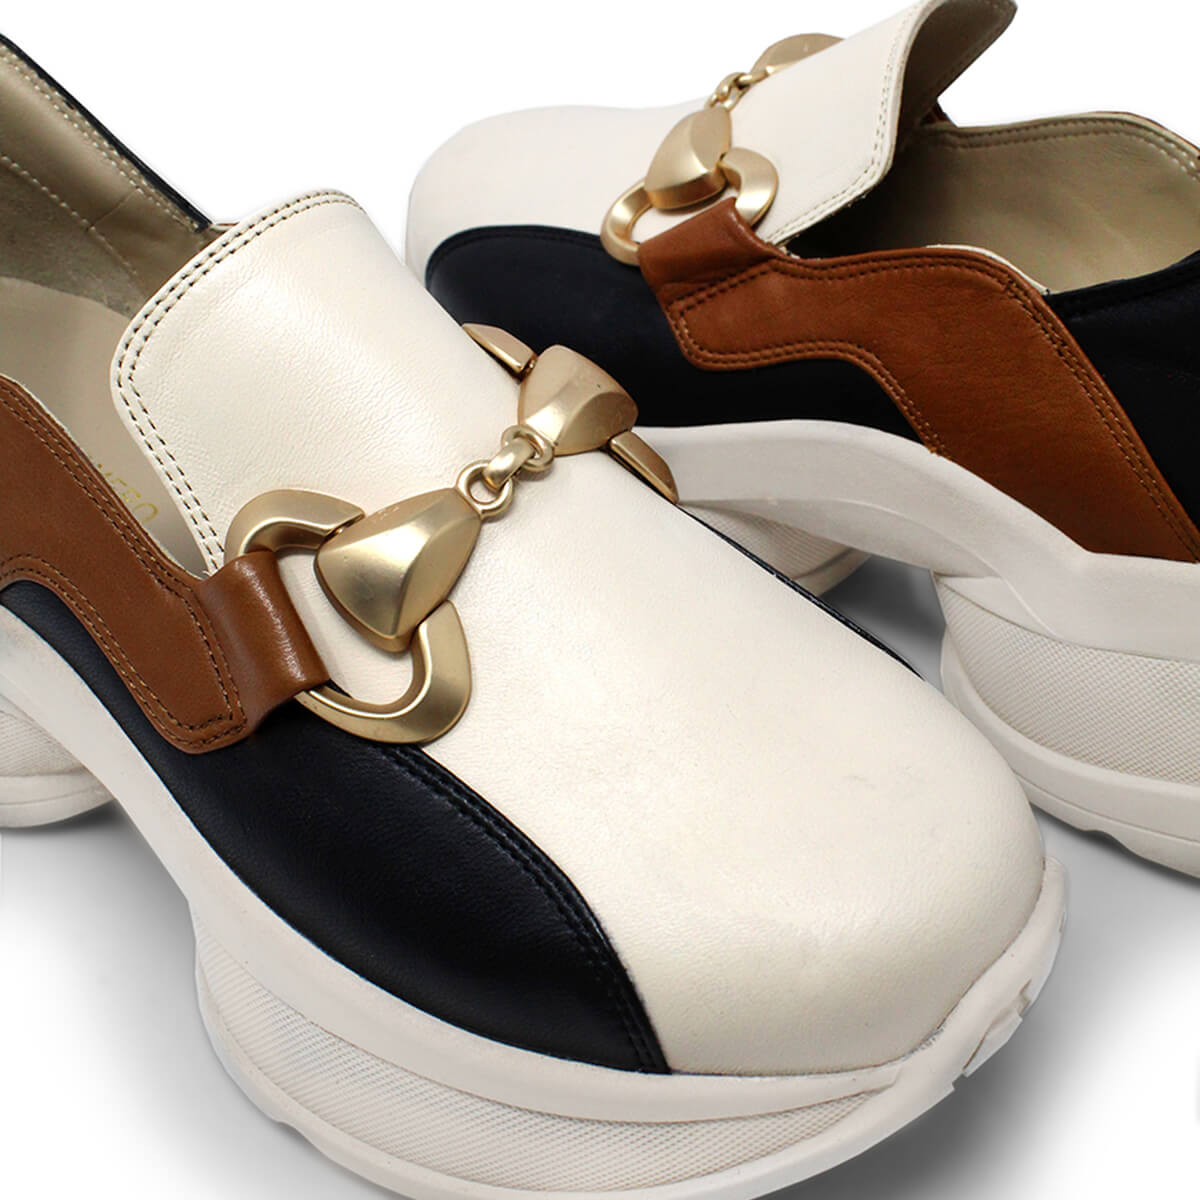 MARINA 75 - Black and Beige Regina Romero Urban Sport Tennis Shoe for Women in Leather